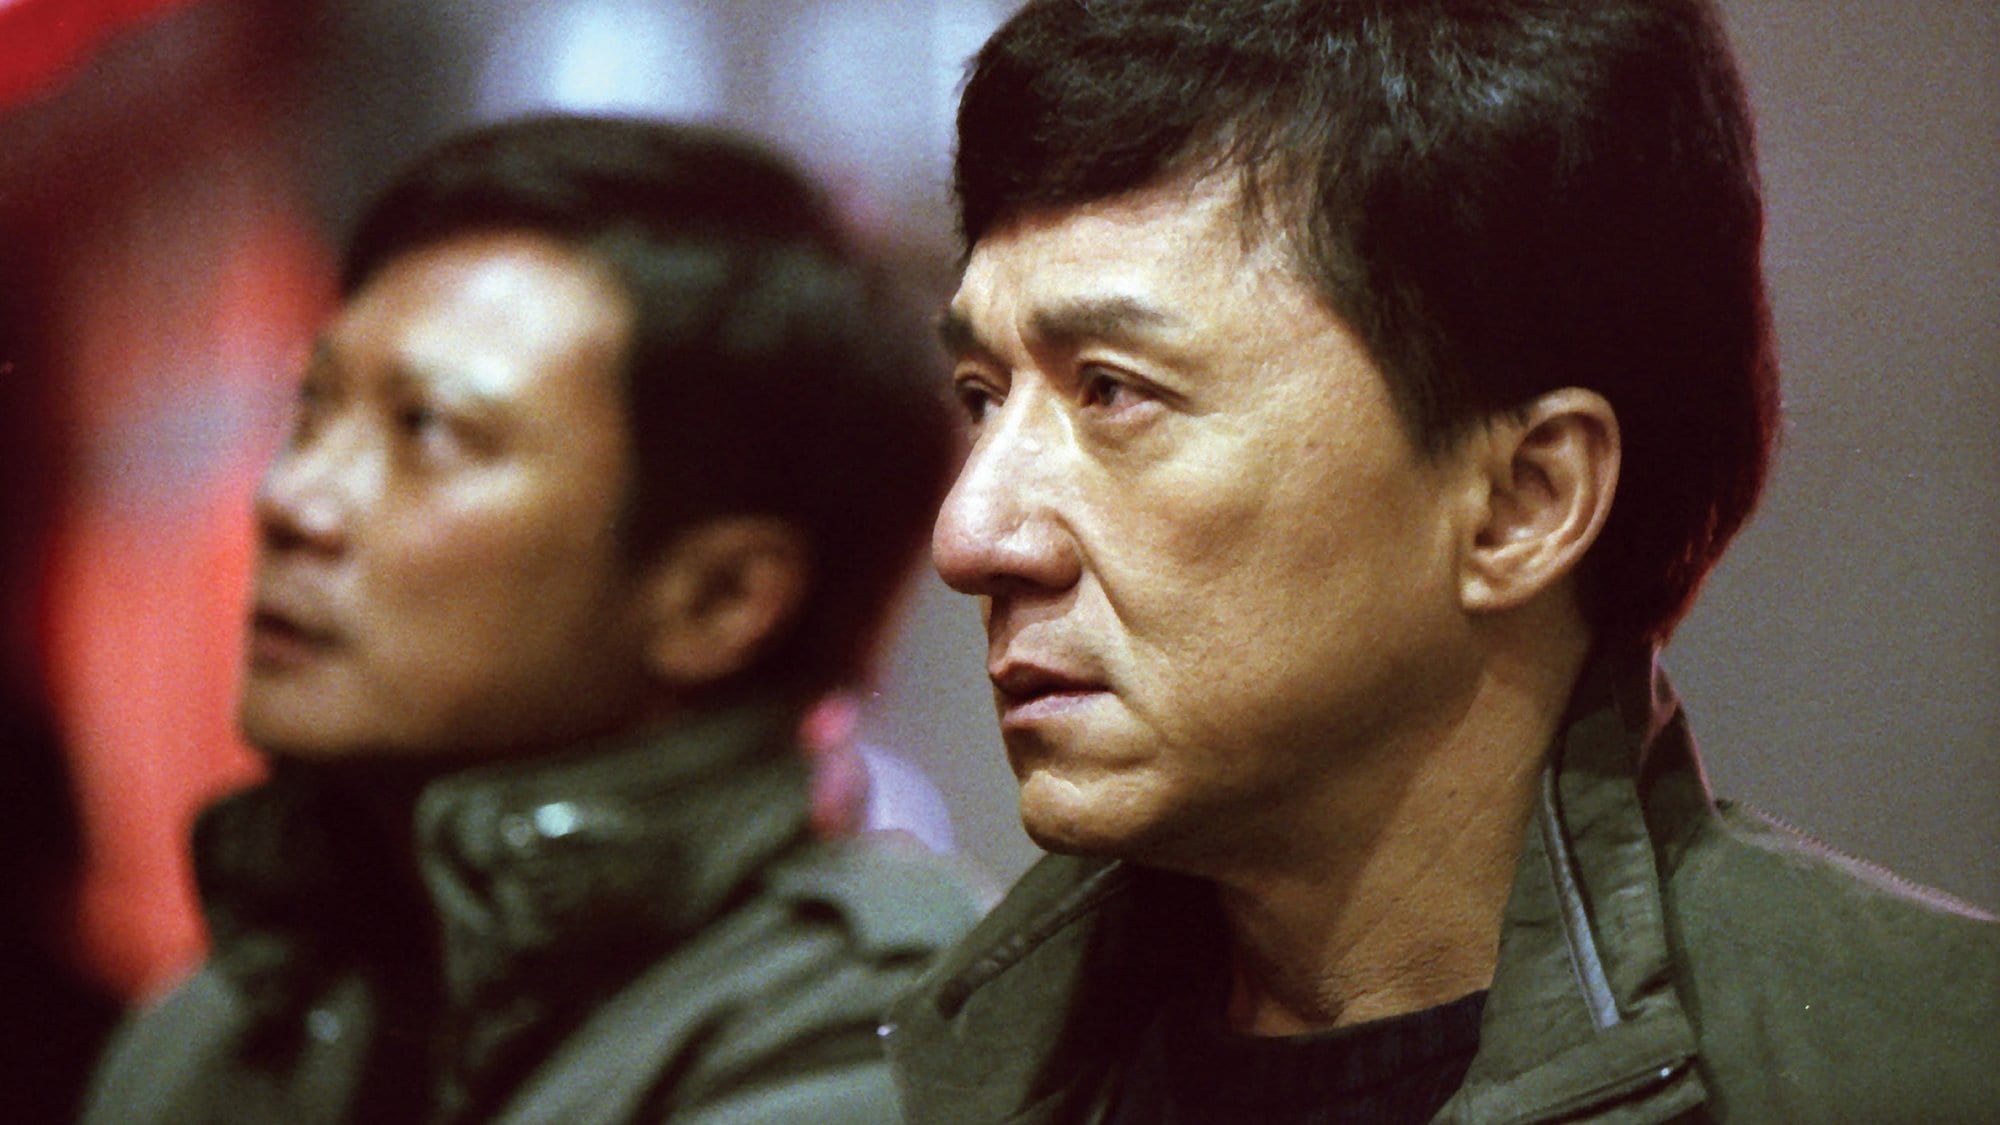 Jackie Chan in Shinjuku Incident